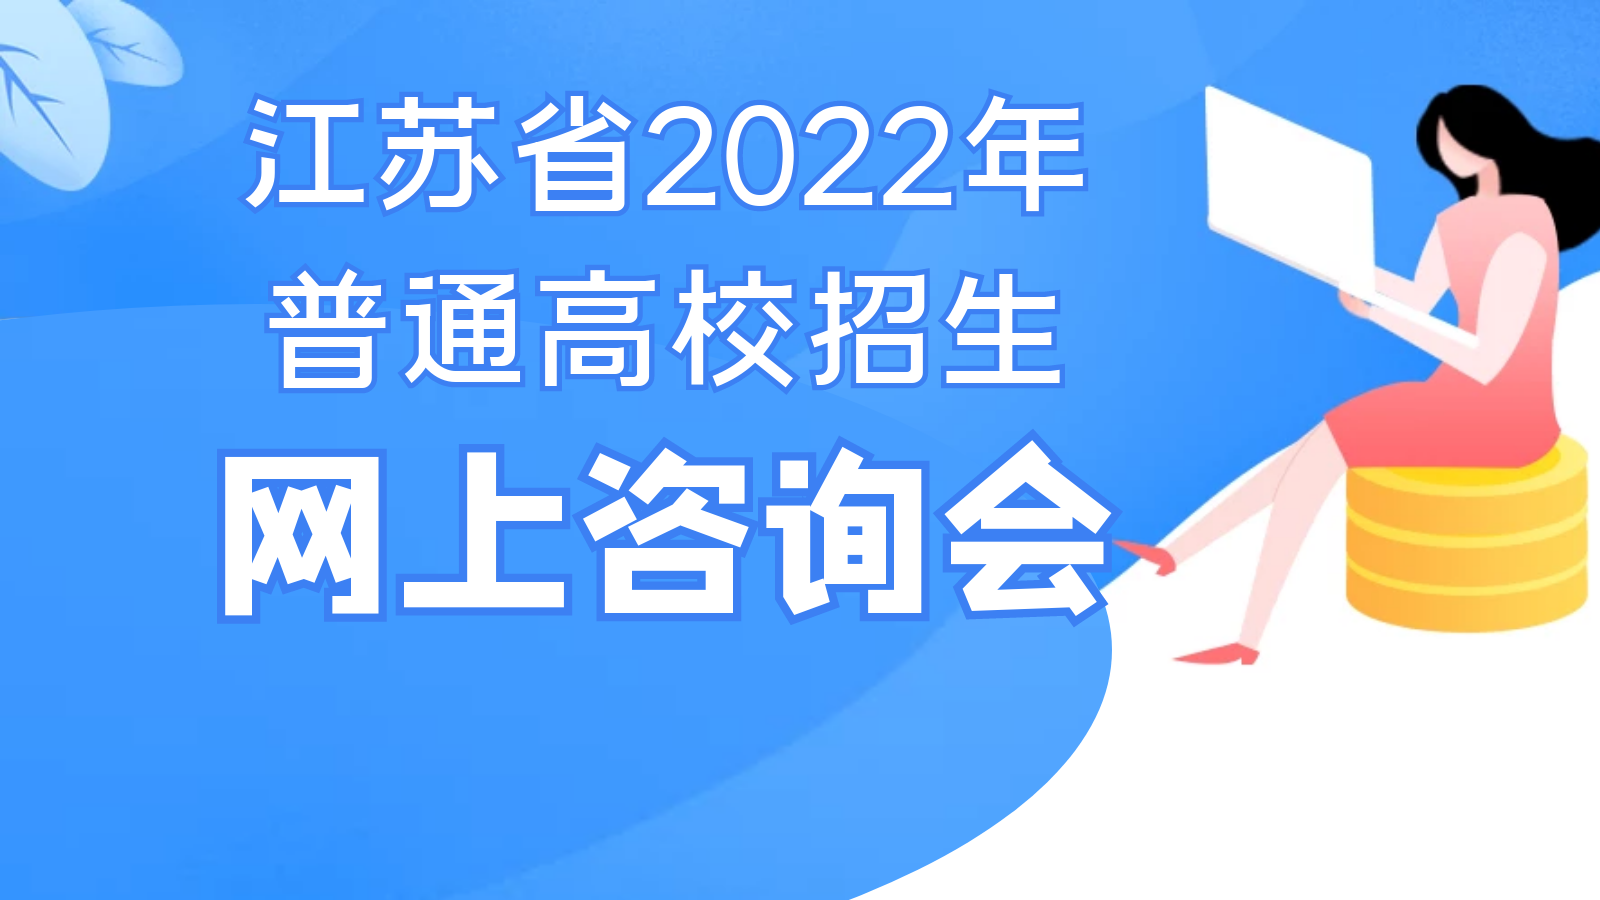 江苏省2022年普通高校招生网上咨询会